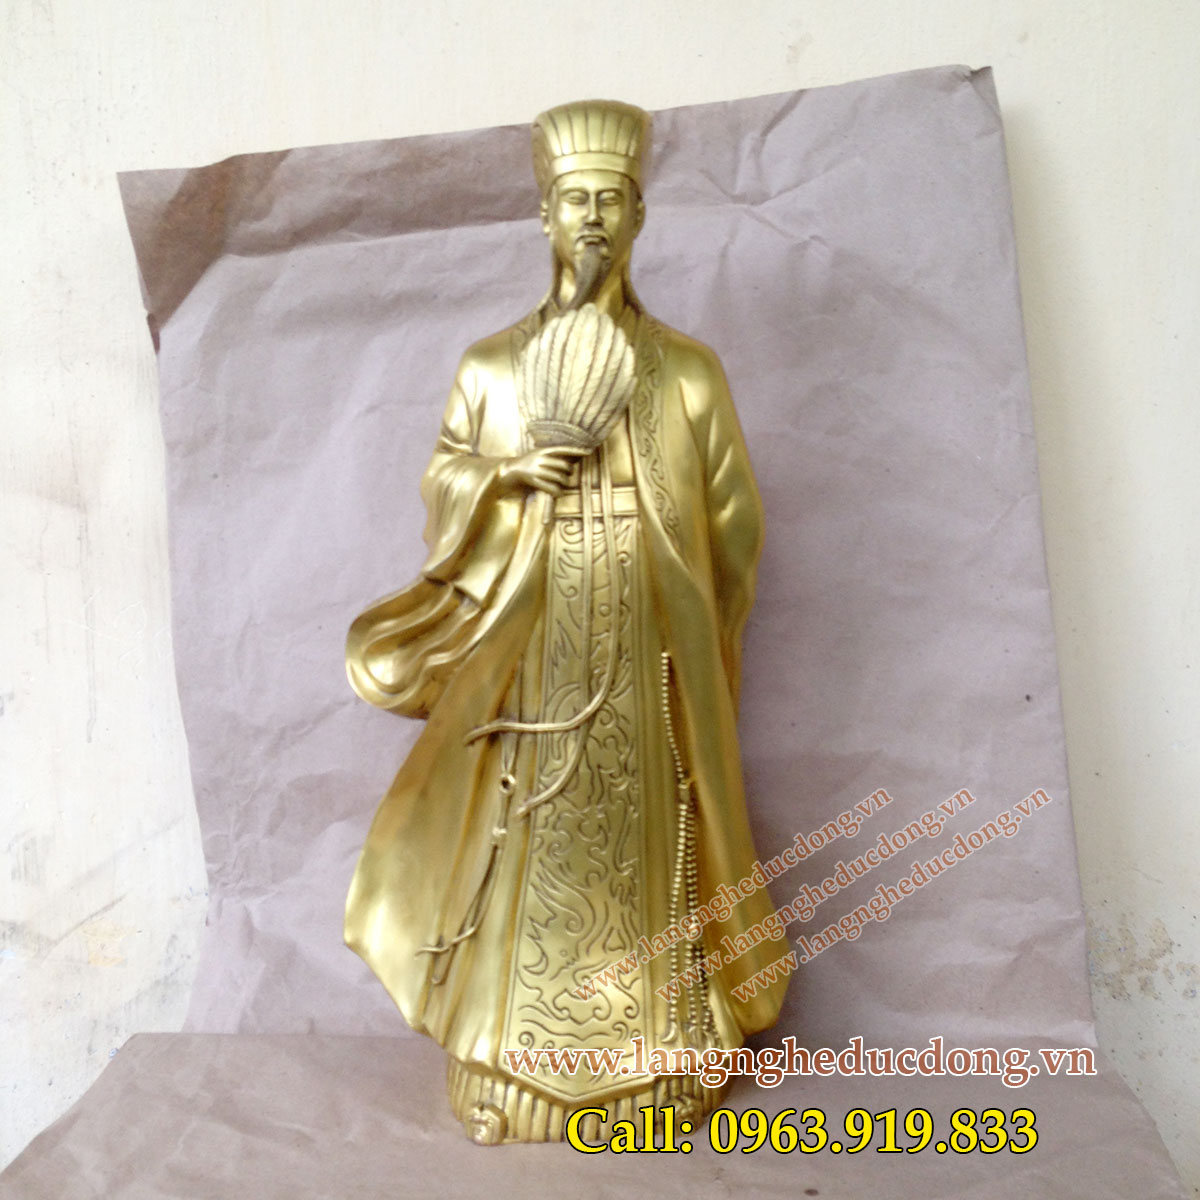 langngheducdong.vn - Tượng Khổng Minh cao 50cm, tượng đồng Gia Cát Lượng